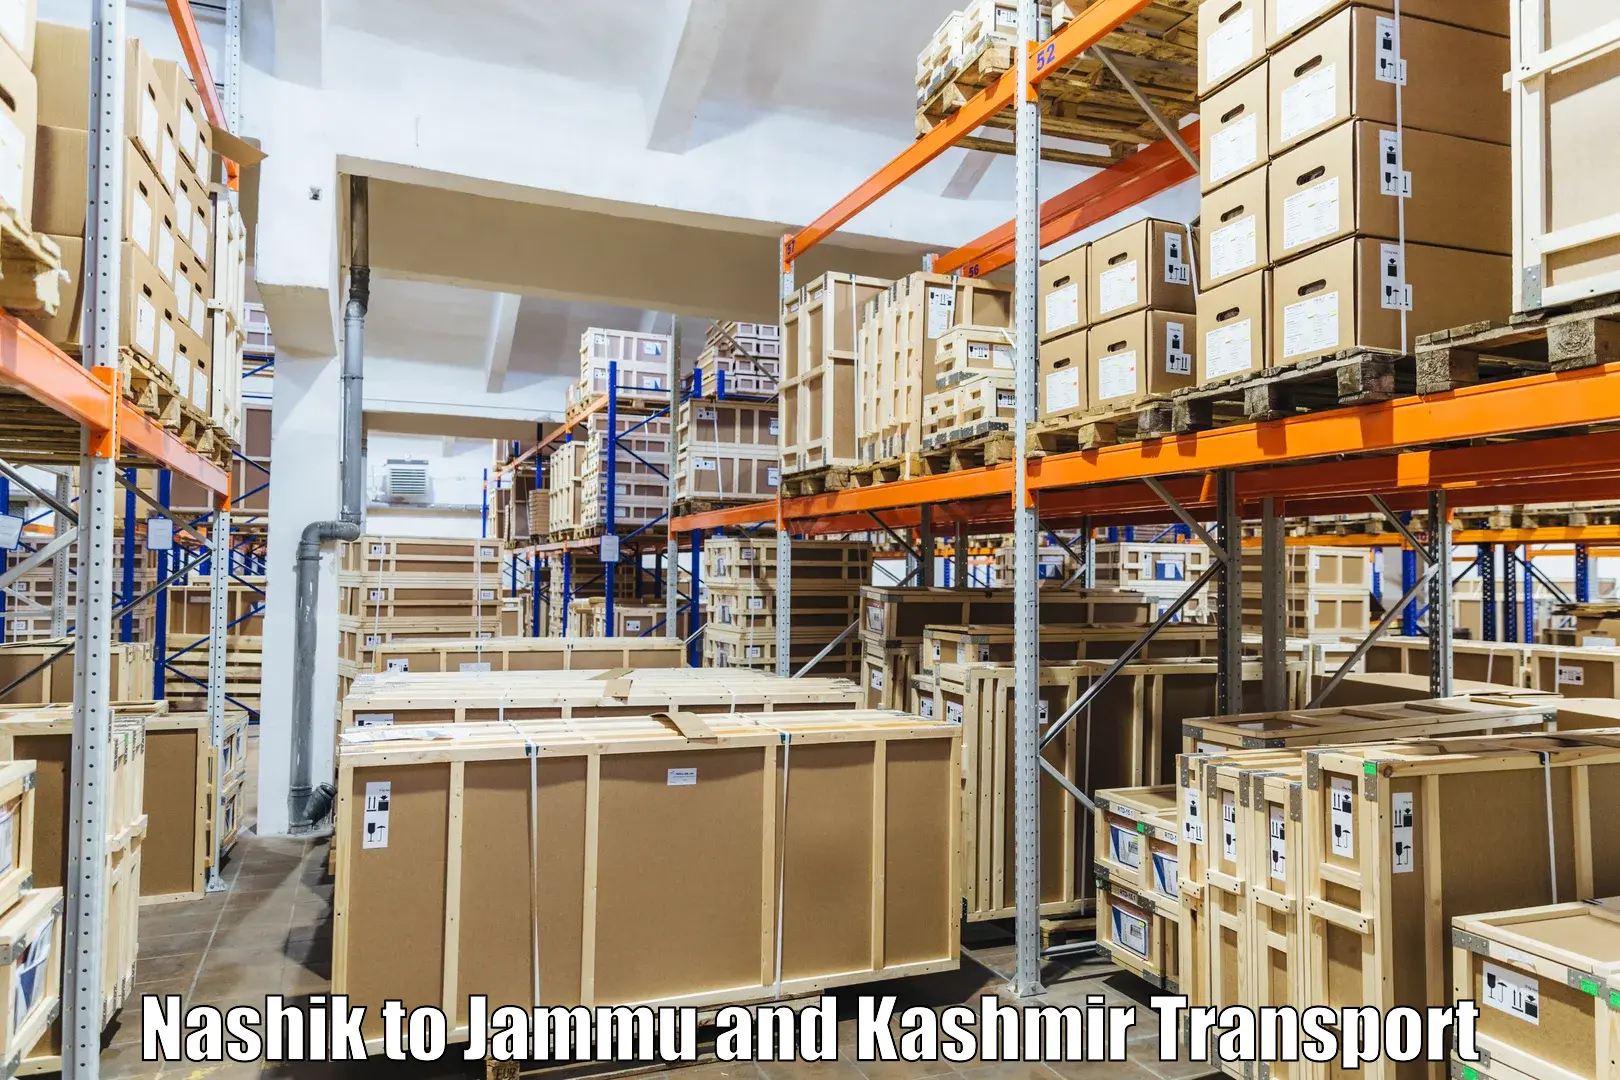 Express transport services Nashik to Jammu and Kashmir